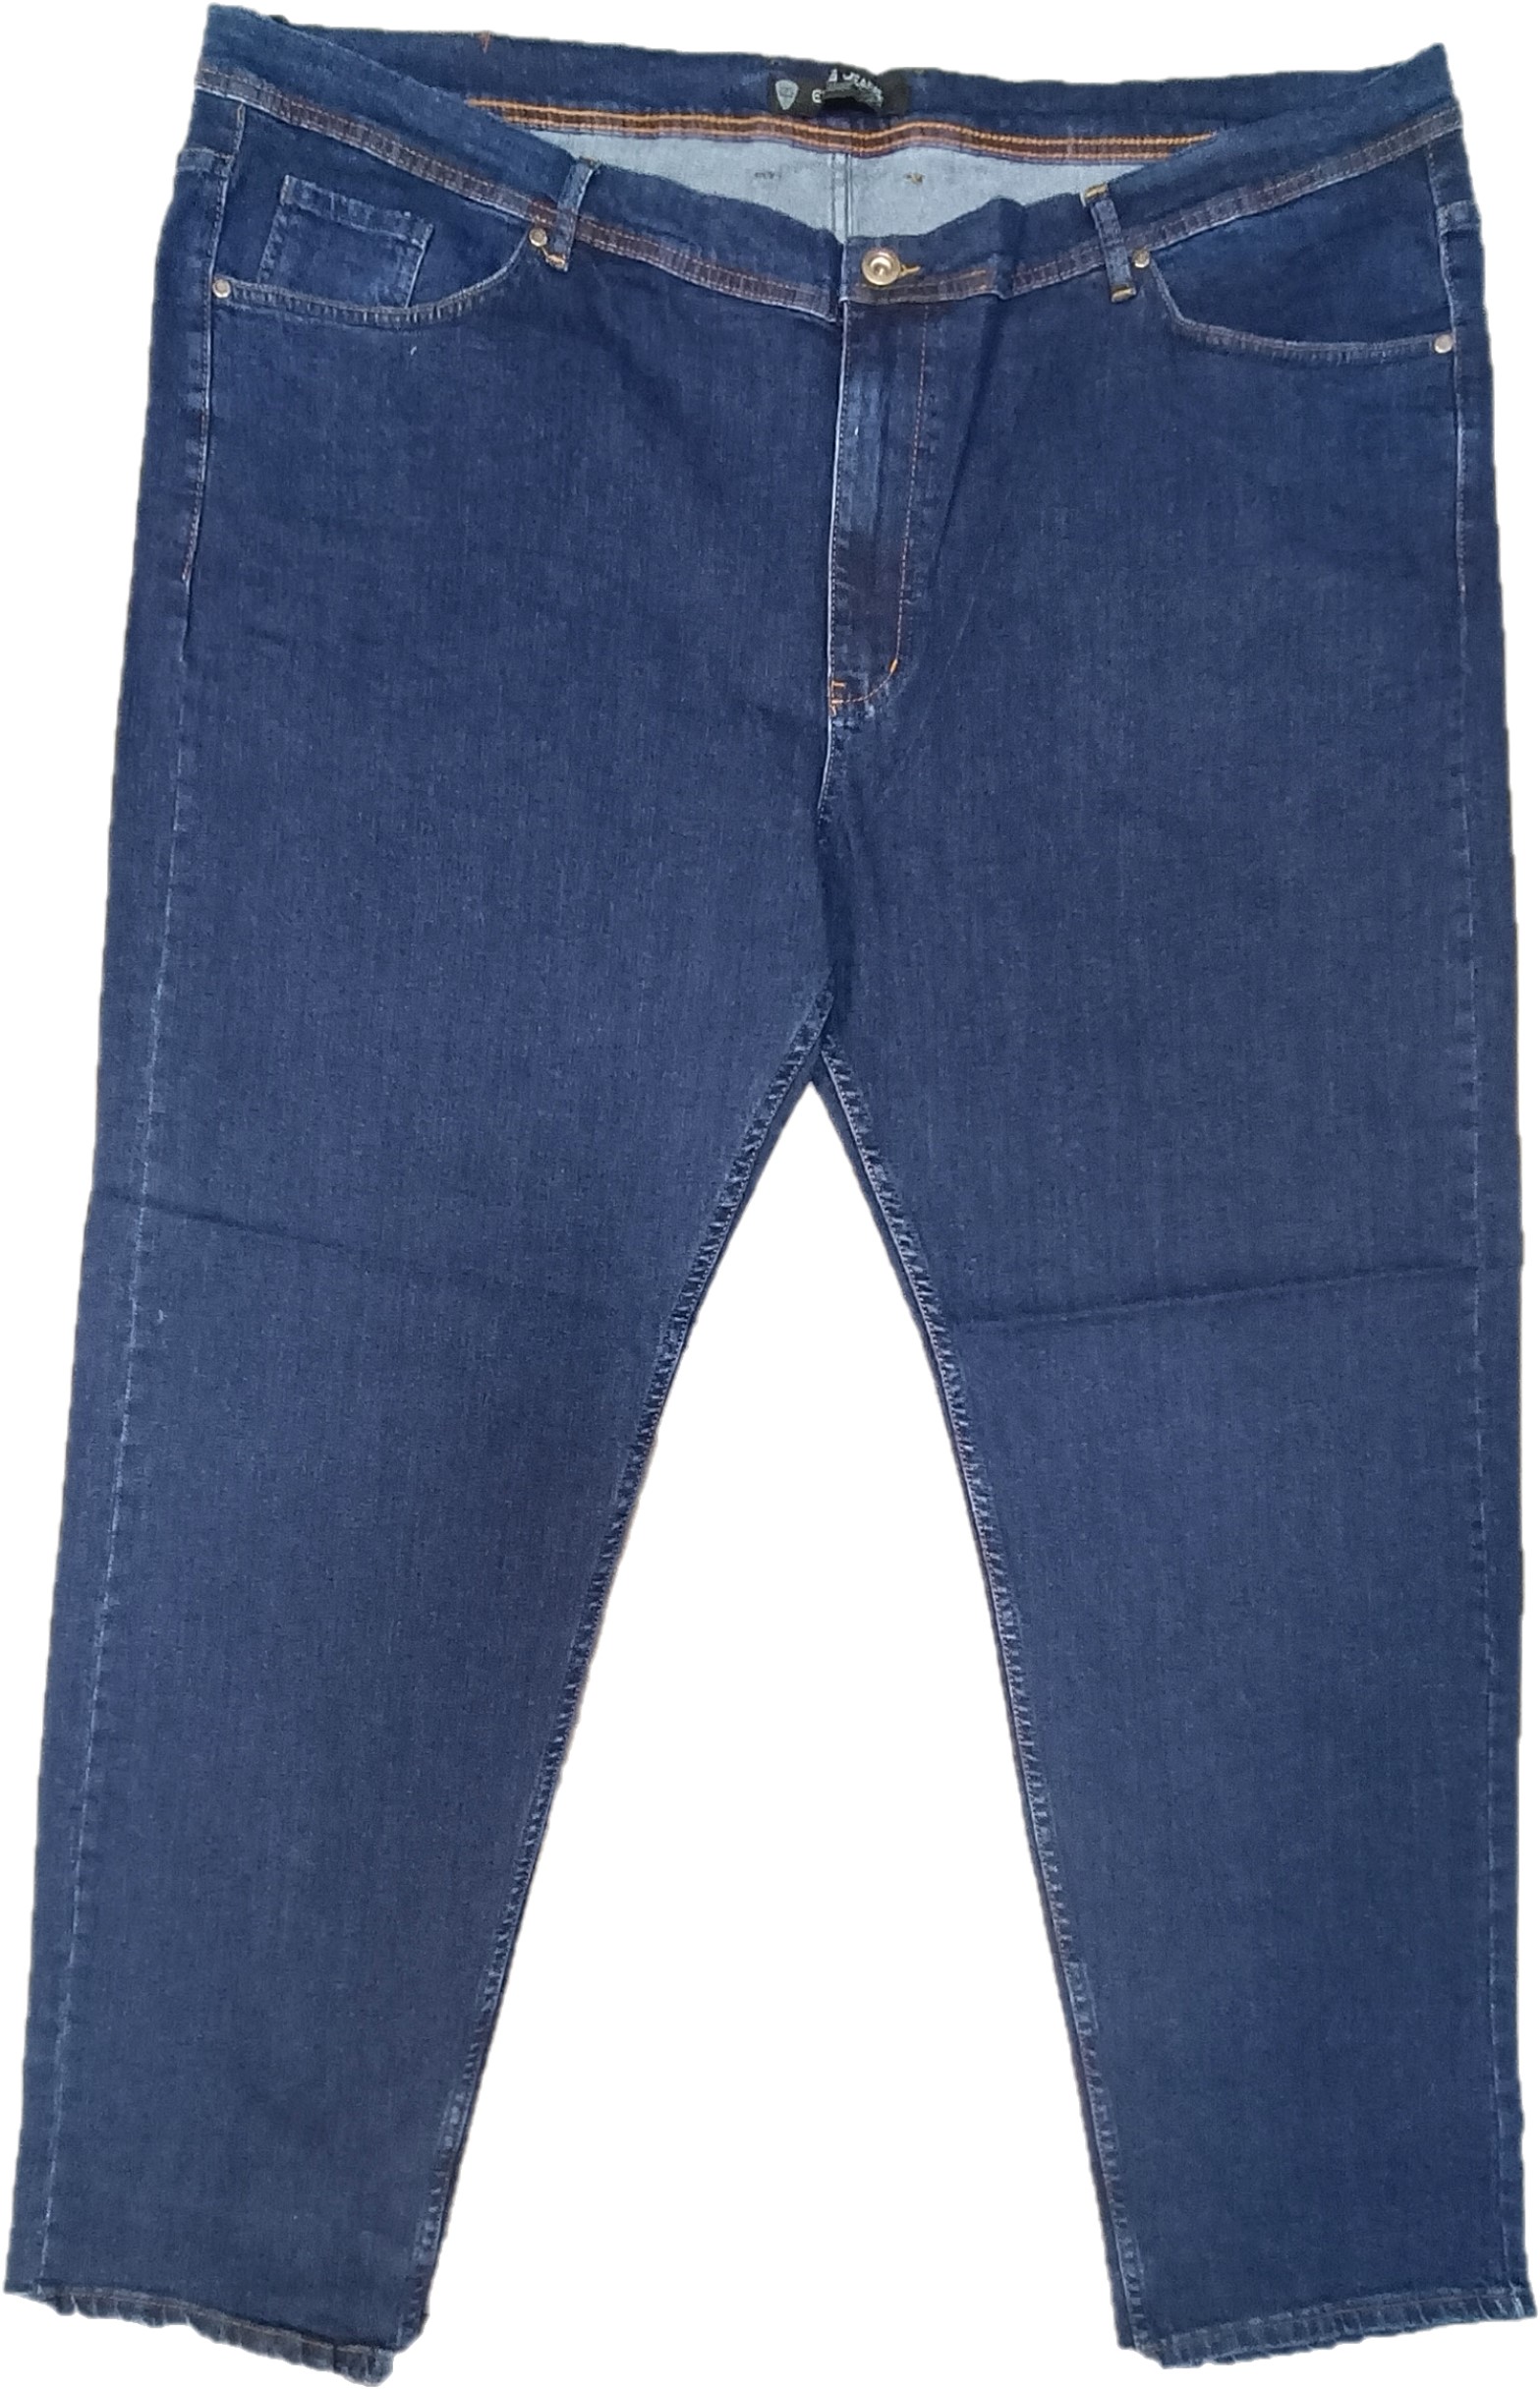 Джинсы мужские Epos Jeans 680055 синие 78 RU